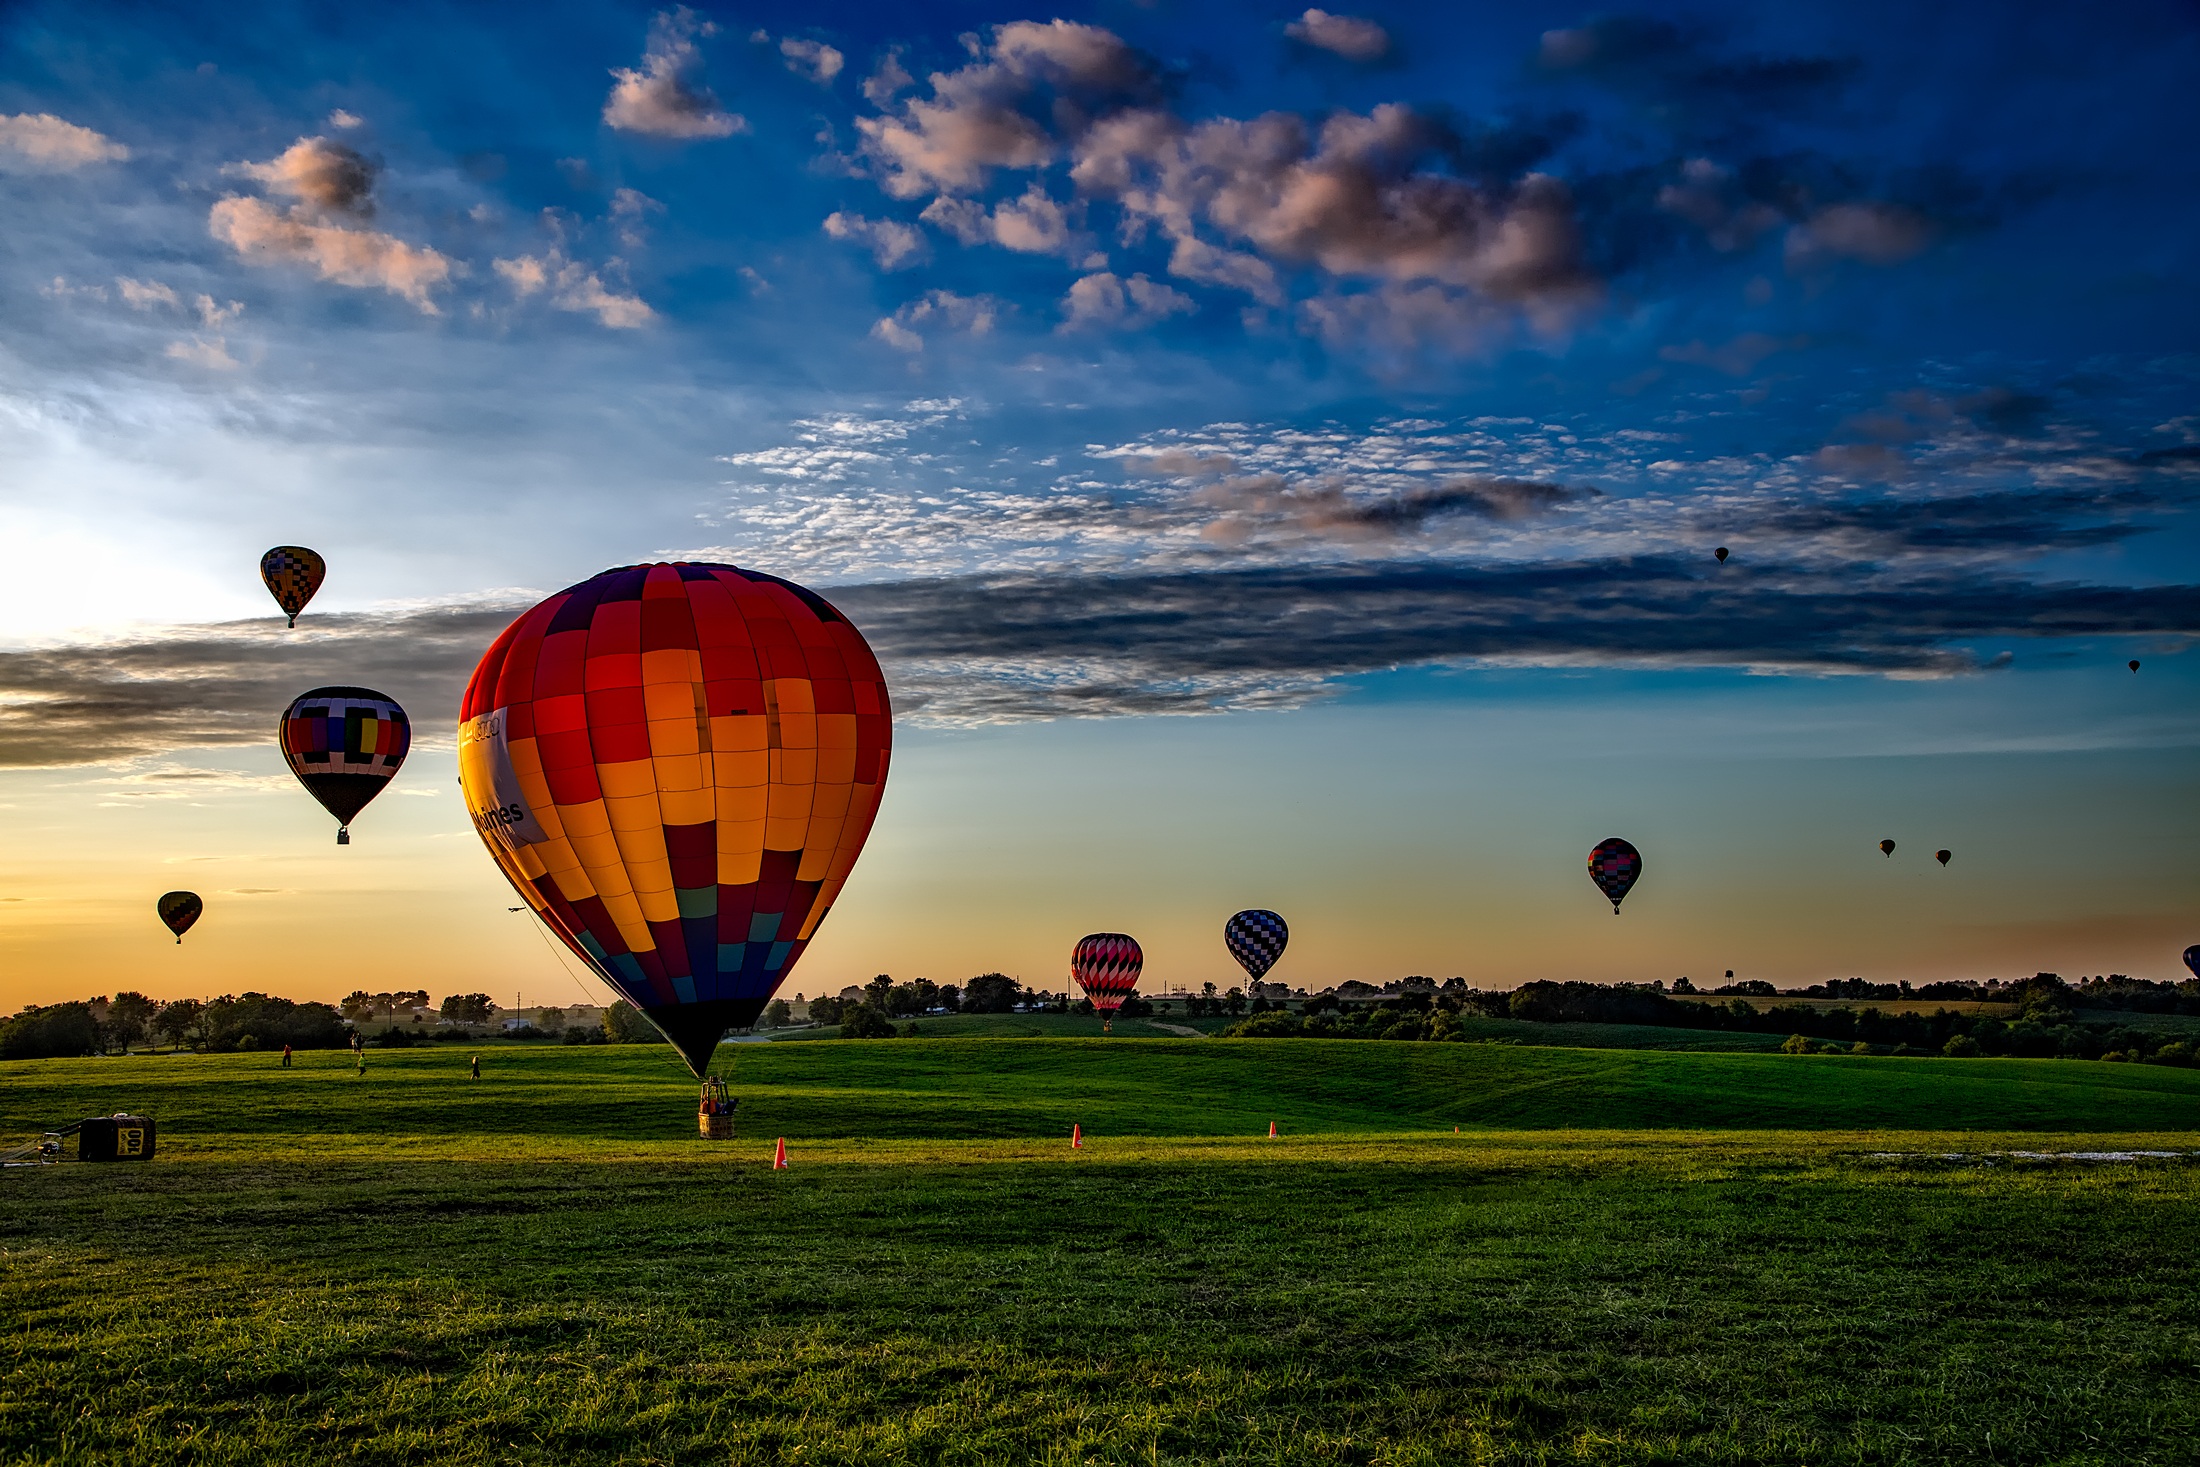 <img src="https://c.pxhere.com/photos/18/f6/adventure_air_aircraft_balloon_clouds_colorful_colourful_dawn-941978.jpg!d" srcset="https://c.pxhere.com/photos/18/f6/adventure_air_aircraft_balloon_clouds_colorful_colourful_dawn-941978.jpg!d" alt="paisaje, césped, horizonte, nube, cielo, sol, amanecer, puesta de sol, campo, aire, Mañana, redondo, globo, globo aerostático, aventuras, amanecer, atmósfera, volador, verano, viajar, aeronave, oscuridad, transporte, noche, rural, reflexión, vehículo, vistoso, vuelo, libertad, vistoso, ocio, juguete, al aire libre, Nubes, divertido, recreo de día, quitarse, paseos en globo, globos aerostáticos, Atmósfera de tierra, Fotos gratis In PxHere">